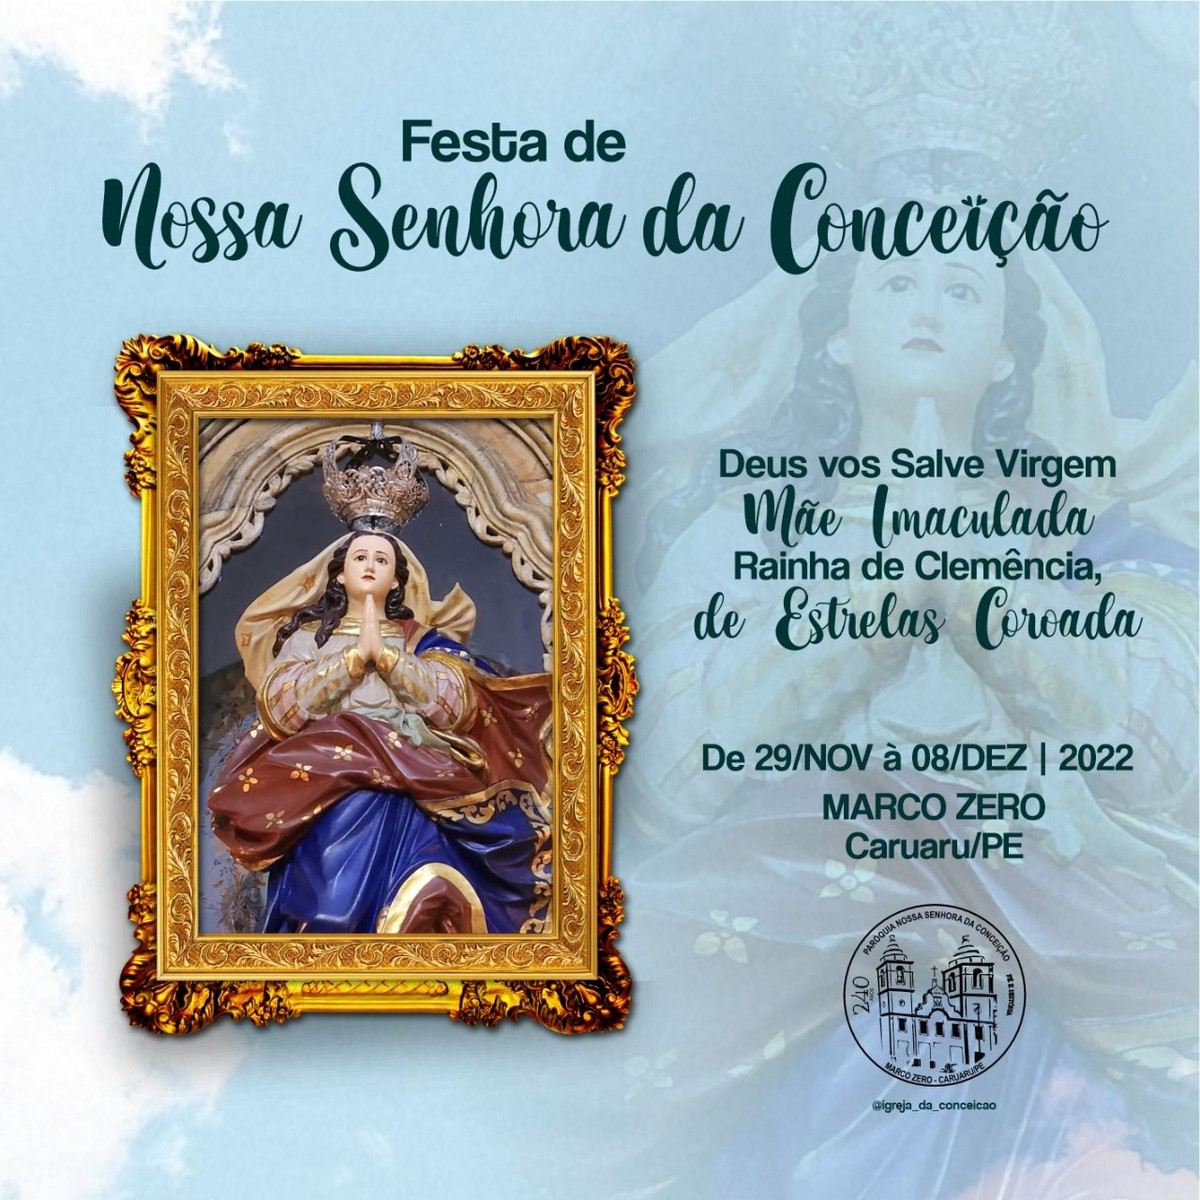 Festa de Nossa Senhora da Conceição, em Caruaru, tem início nesta  terça-feira (29) | Caruaru e Região | G1